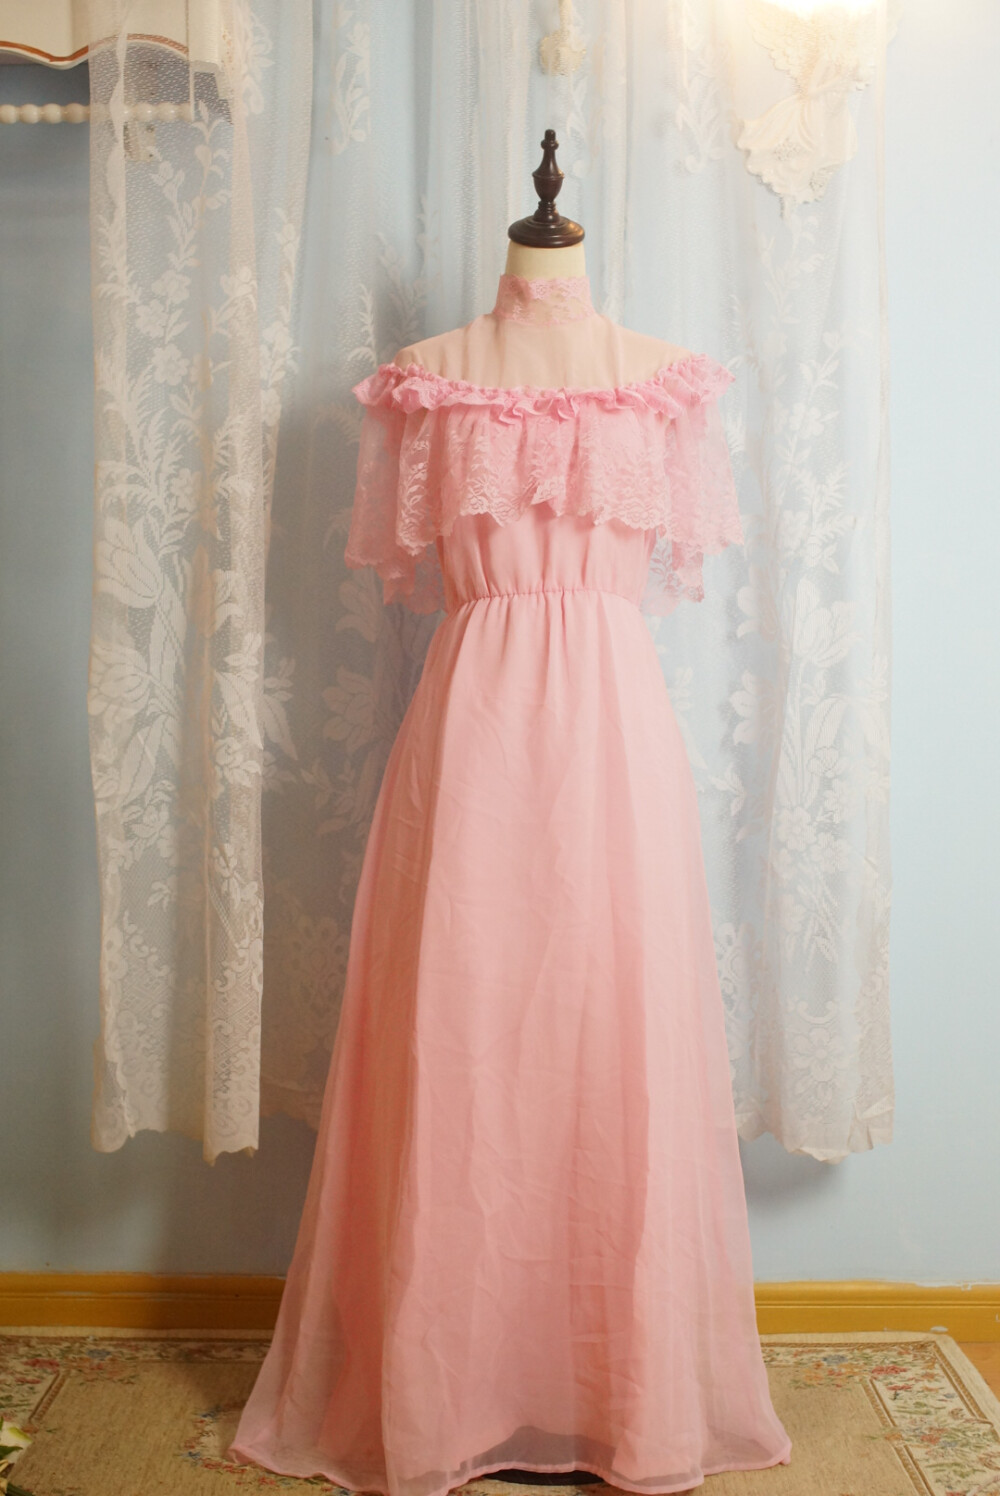 1970's 贵族小姐风 粉色婚纱礼服